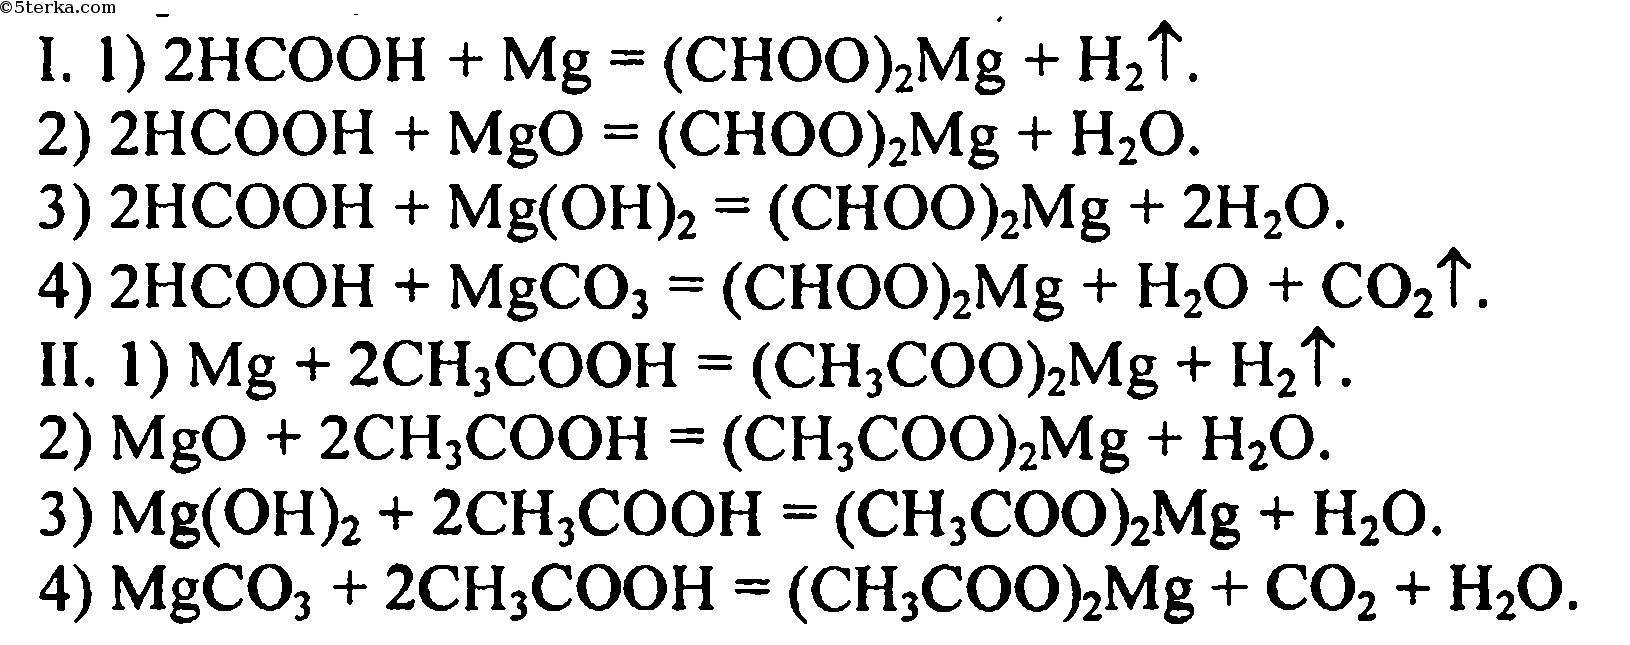 Муравьиная кислота гидроксид магния. Муравьиная кислота и магний. Уксусная кислота и гидроксид магния. Метановая кислота плюс магний. Муравьиная кислота плюс литий о аш.